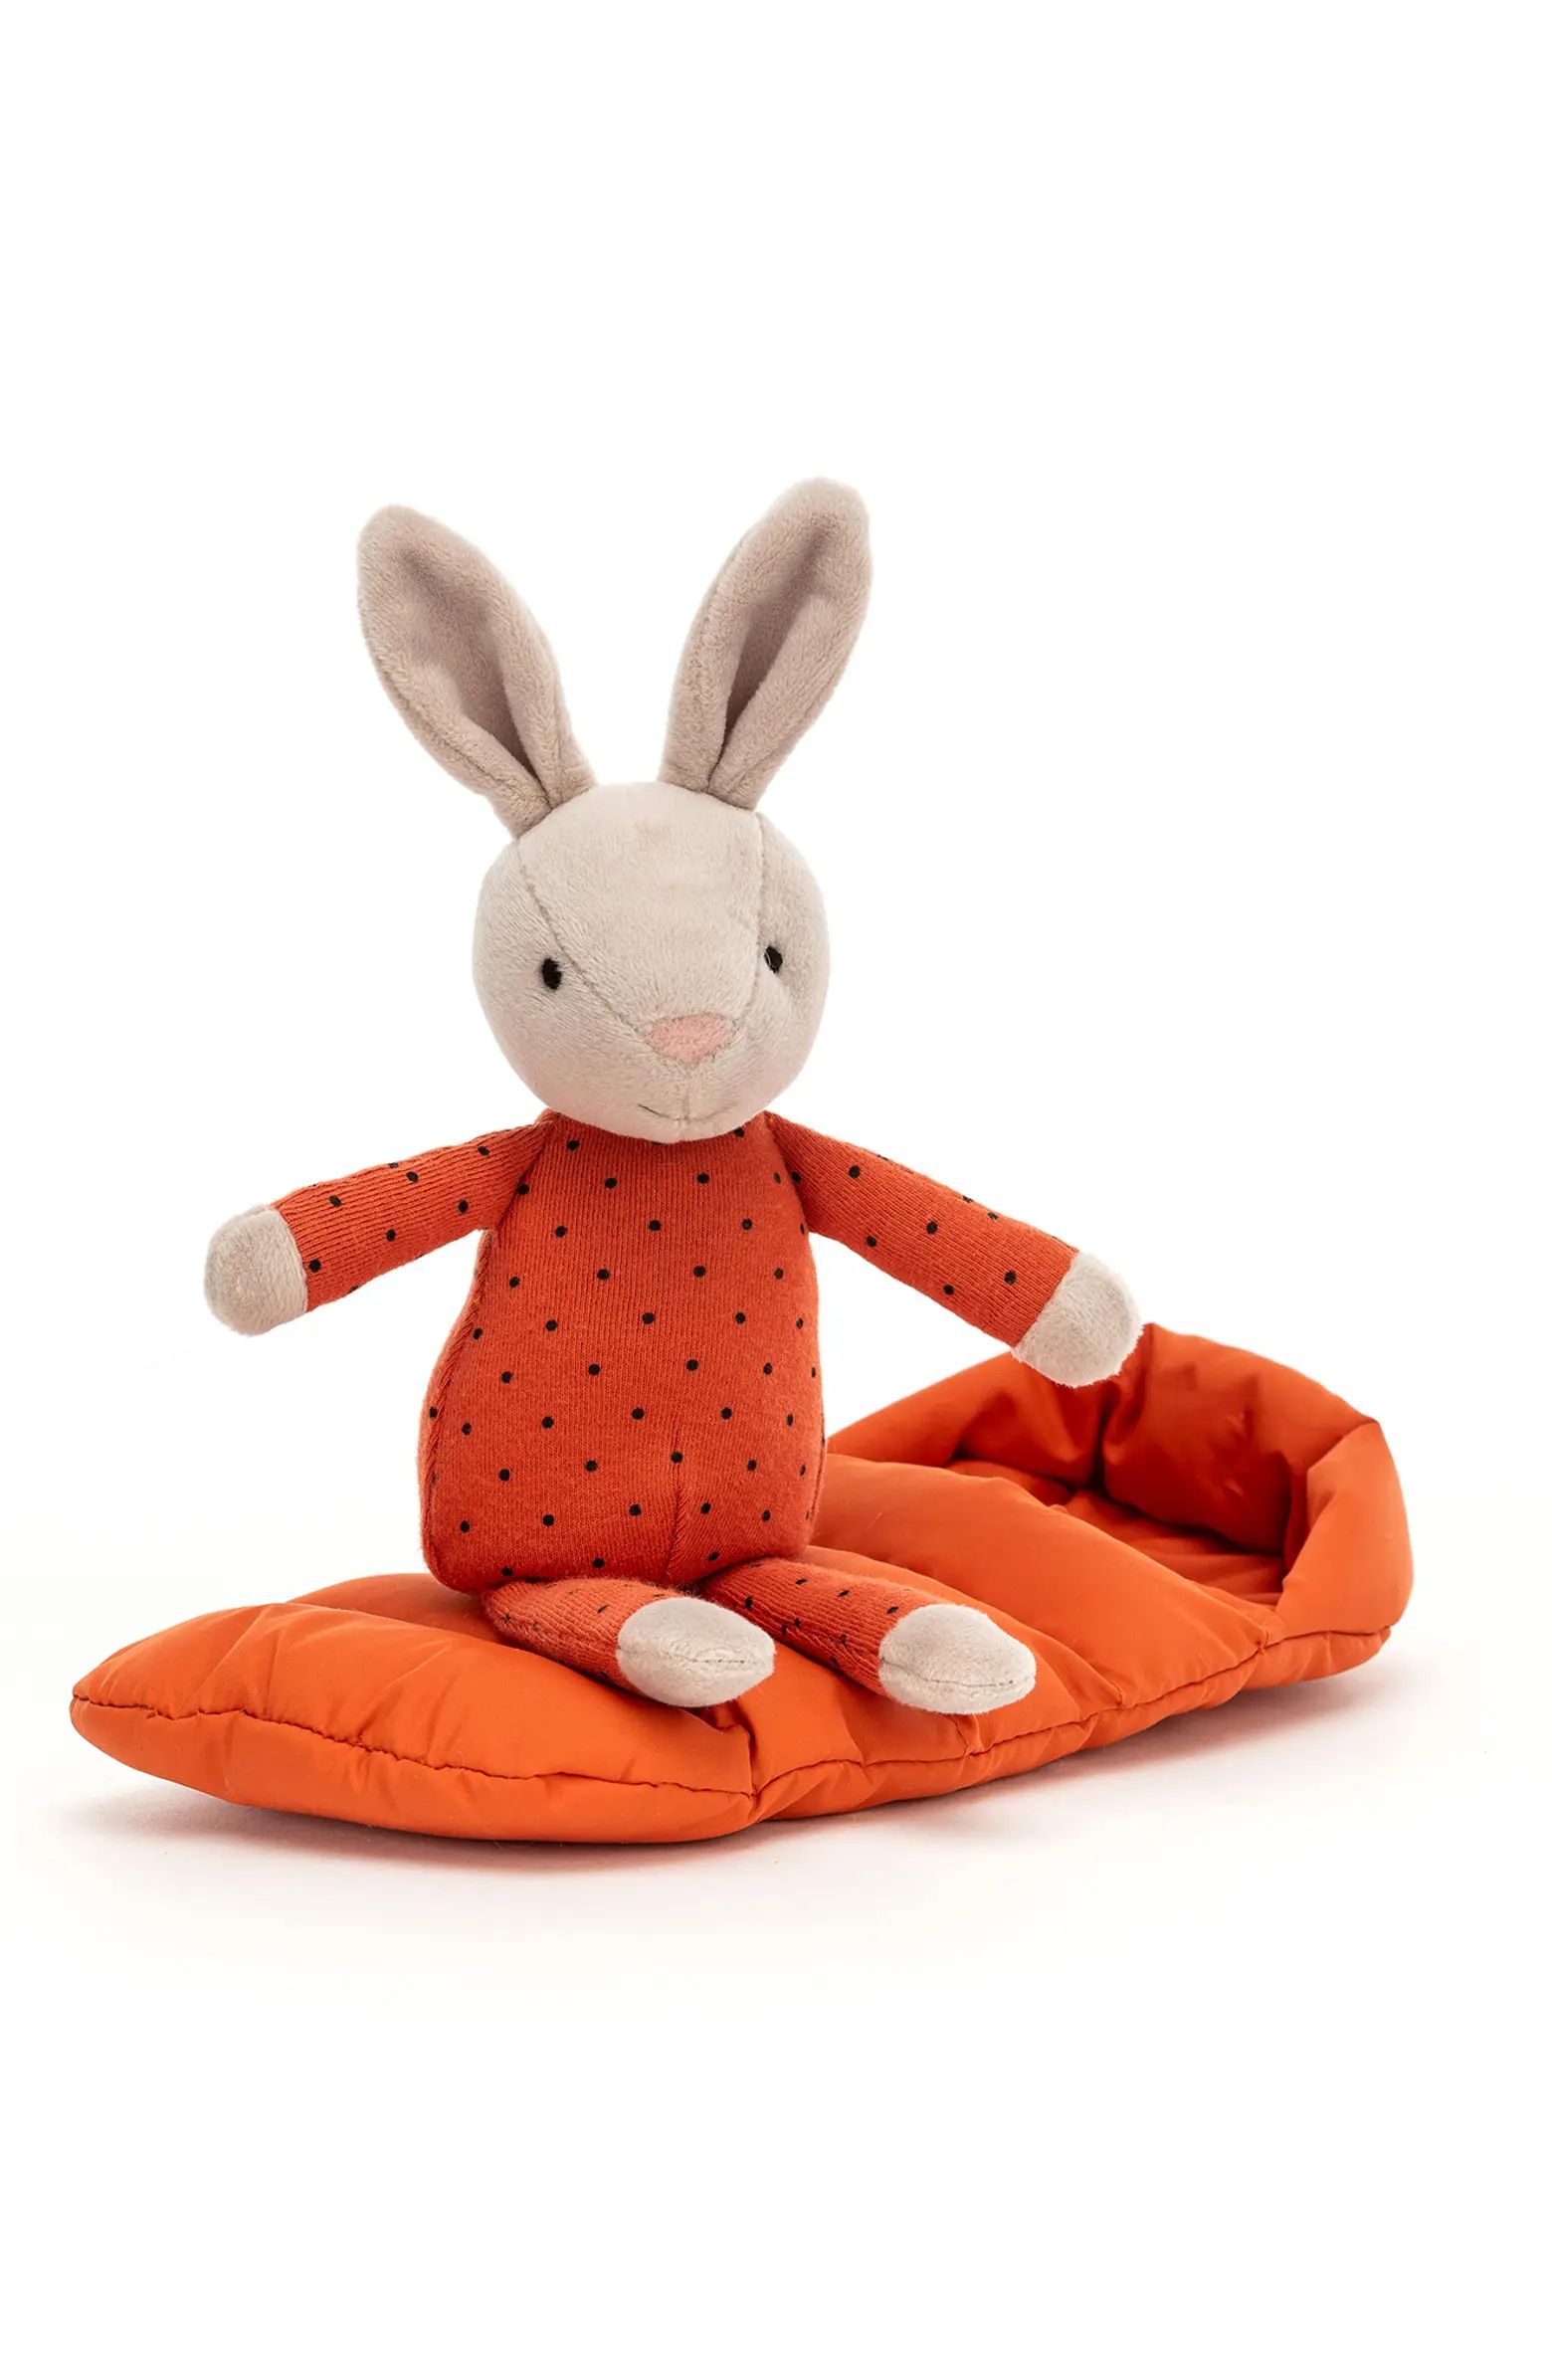 Jellycat Snuggler Bunny Plush Toy | Nordstrom | Nordstrom